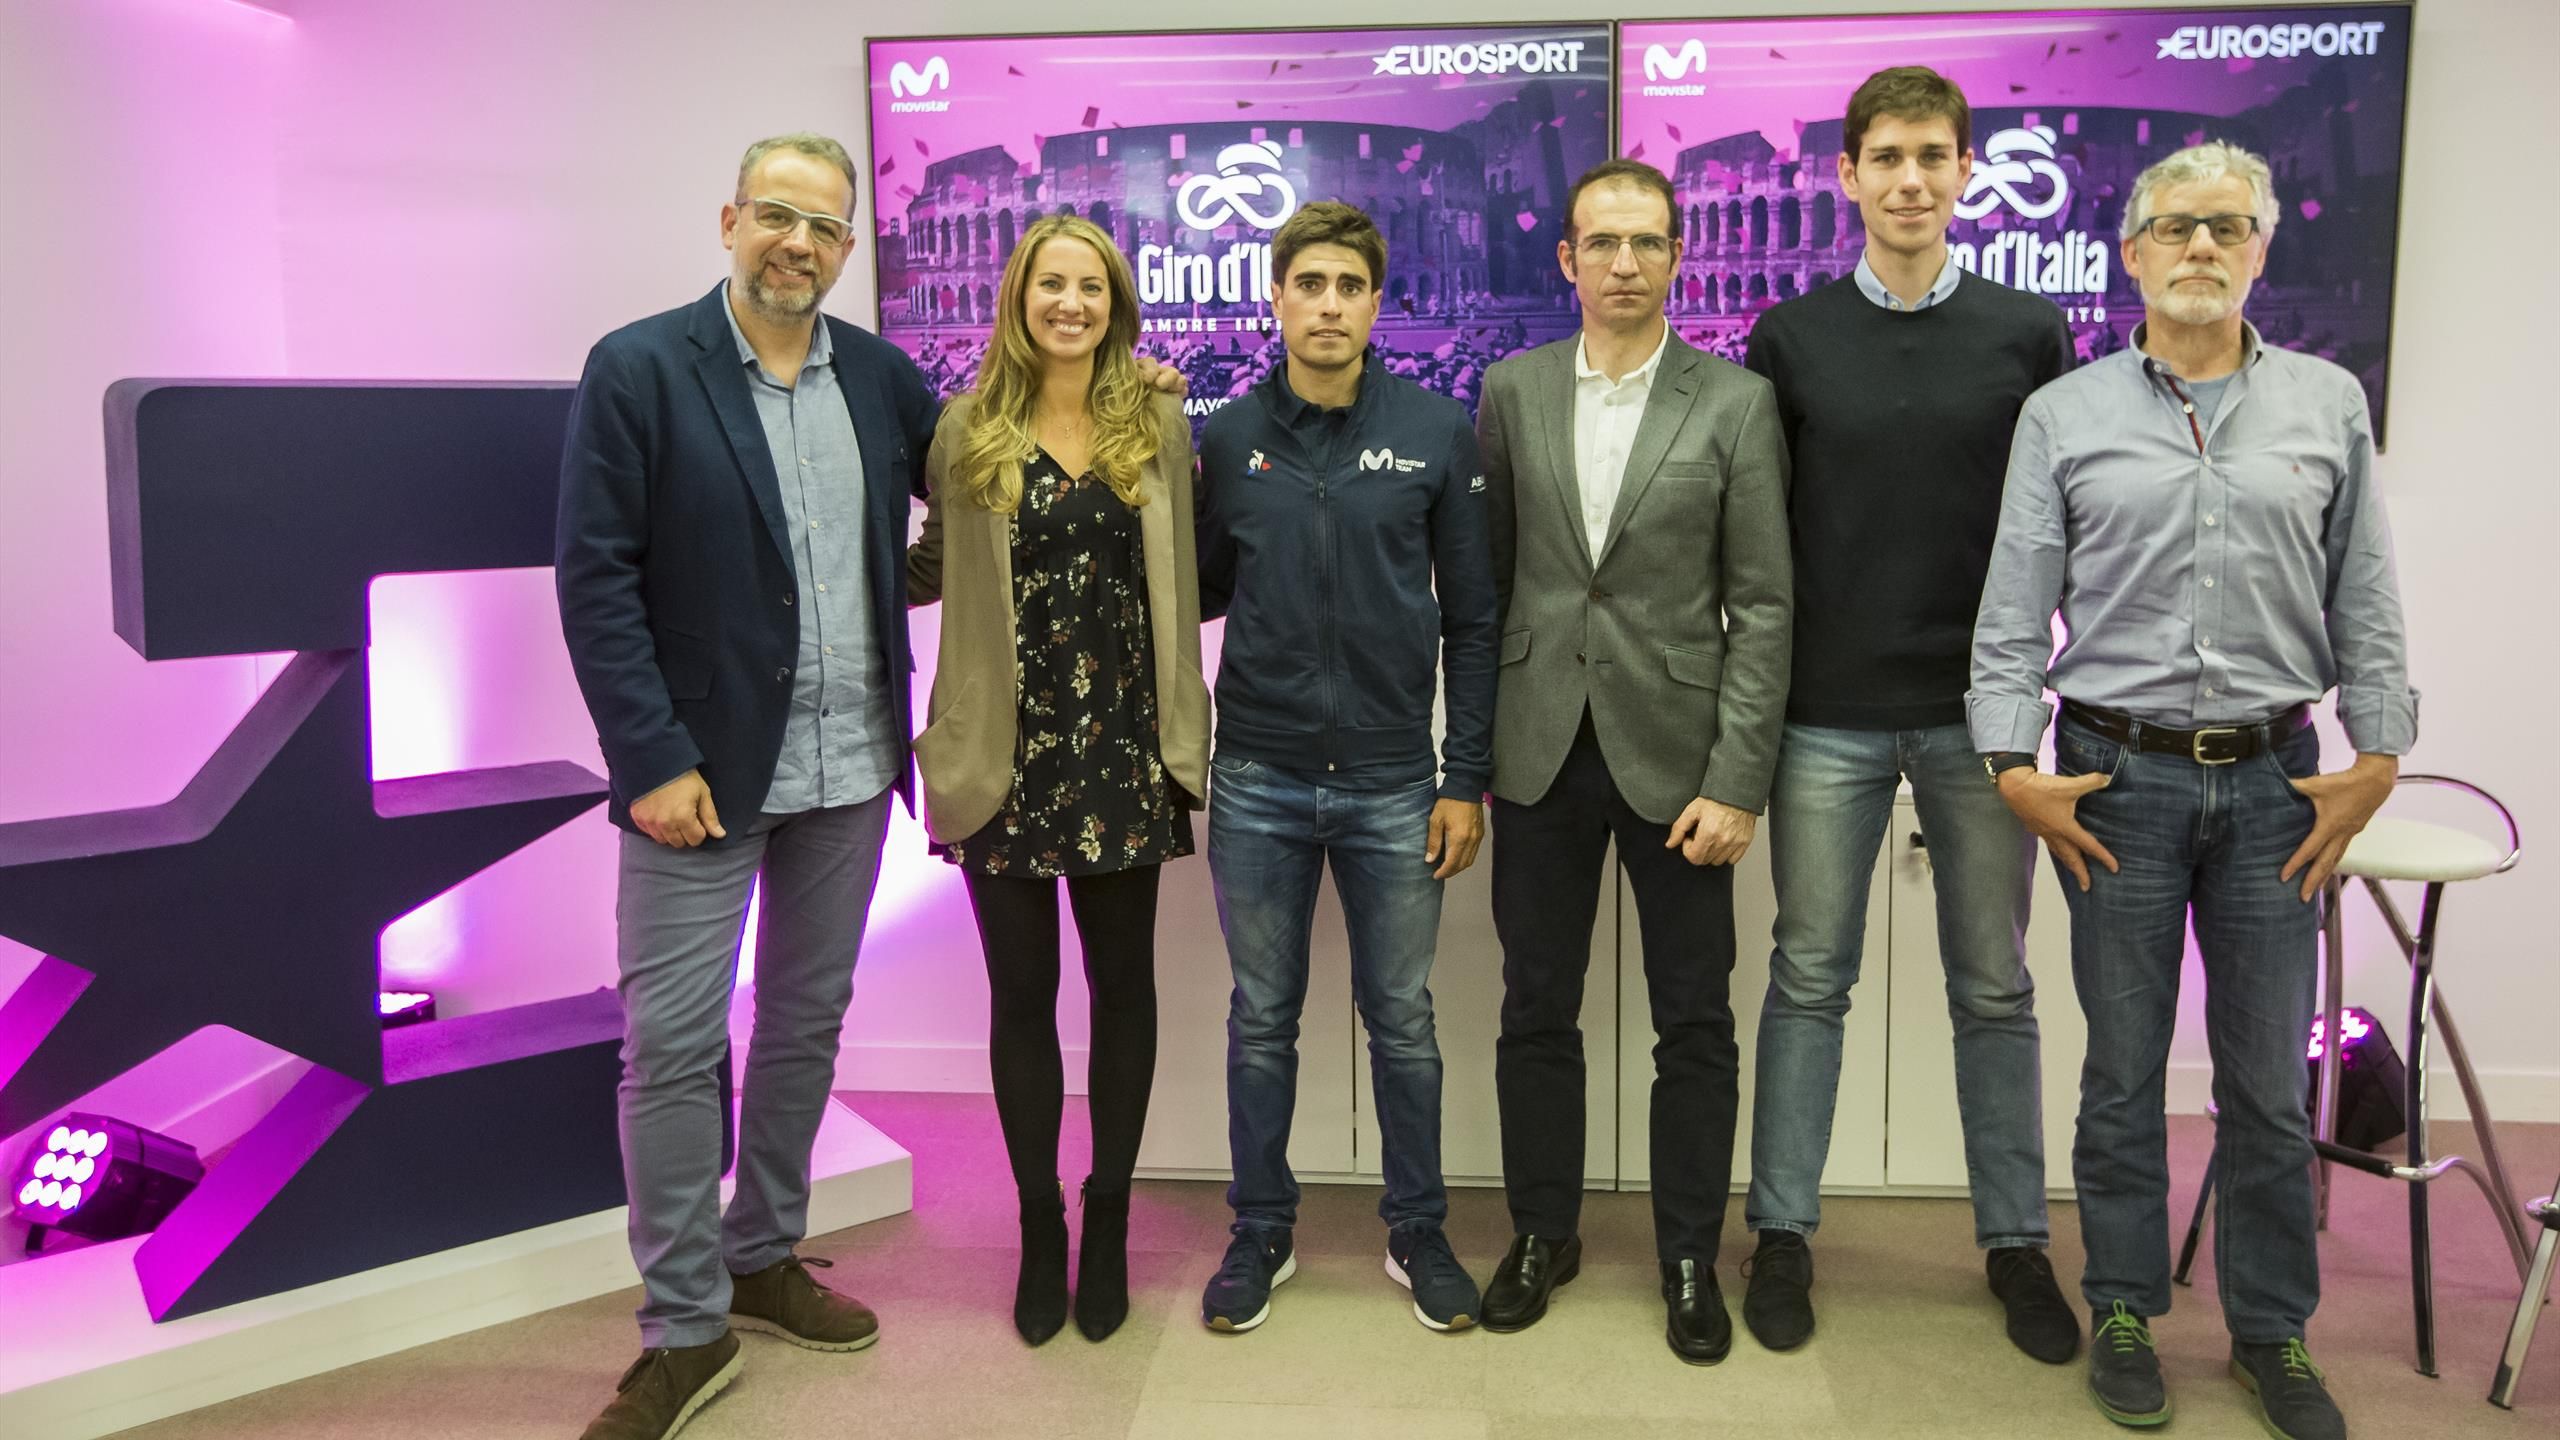 Las claves de Giro de Italia en Eurosport: Una experiencia más intensa - Eurosport